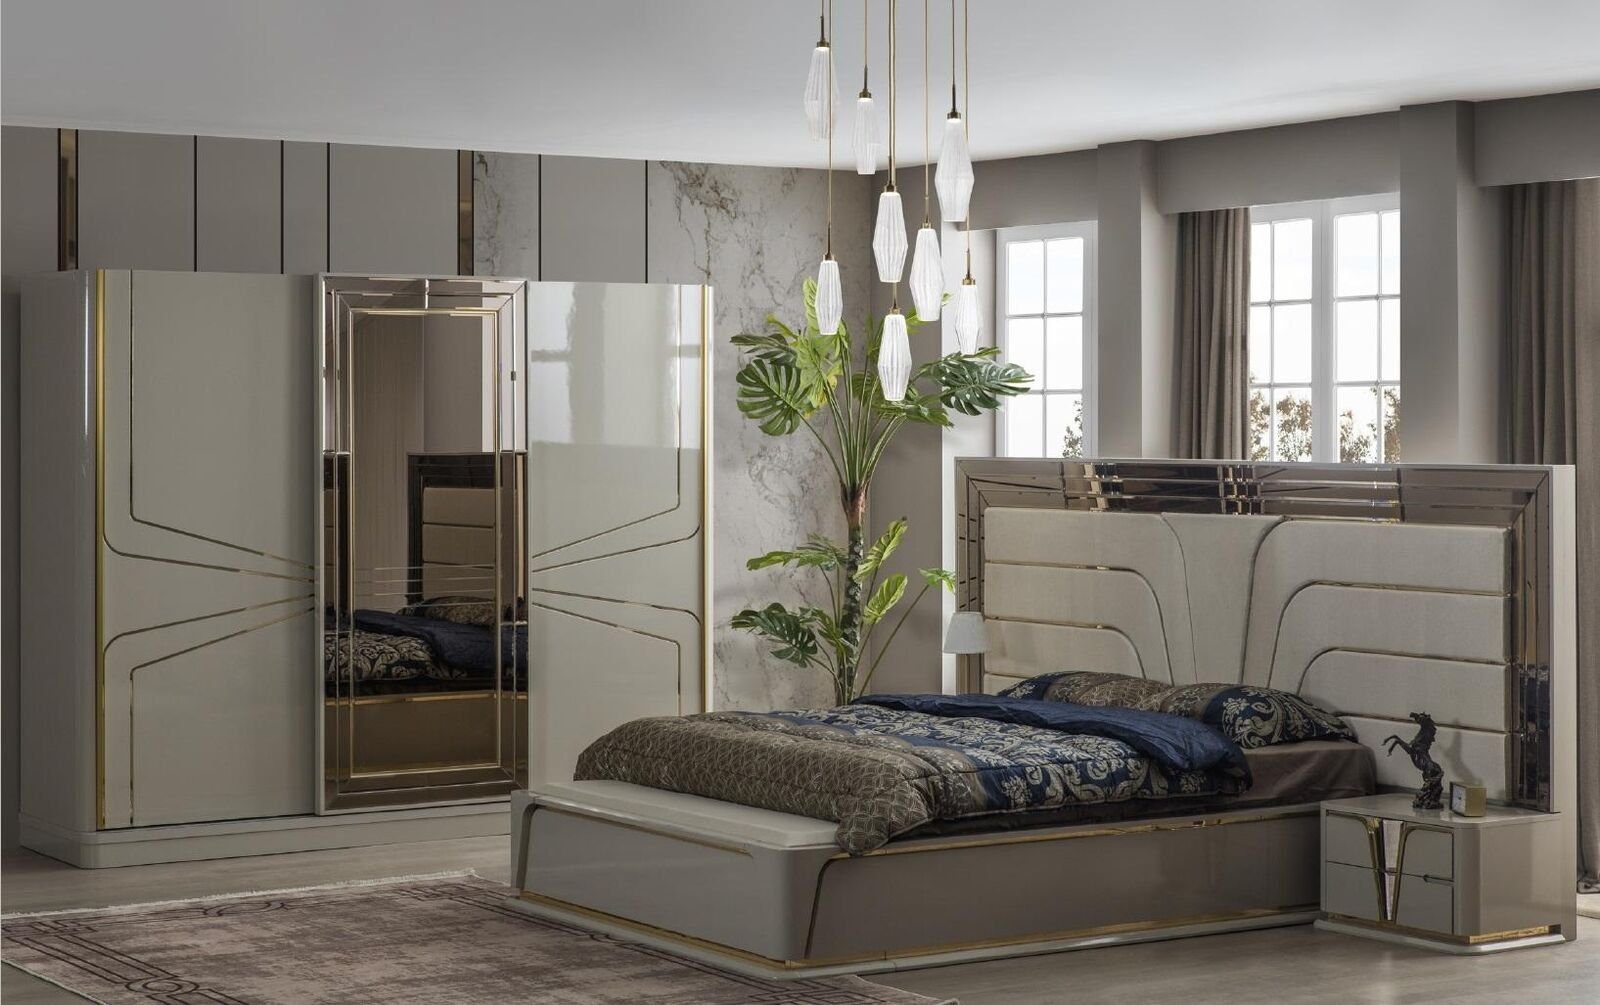 JVmoebel Schlafzimmer-Set Garnitur Schlafzimmer Doppelbett Luxus Bett Modern Beige Set 4tlg Neu